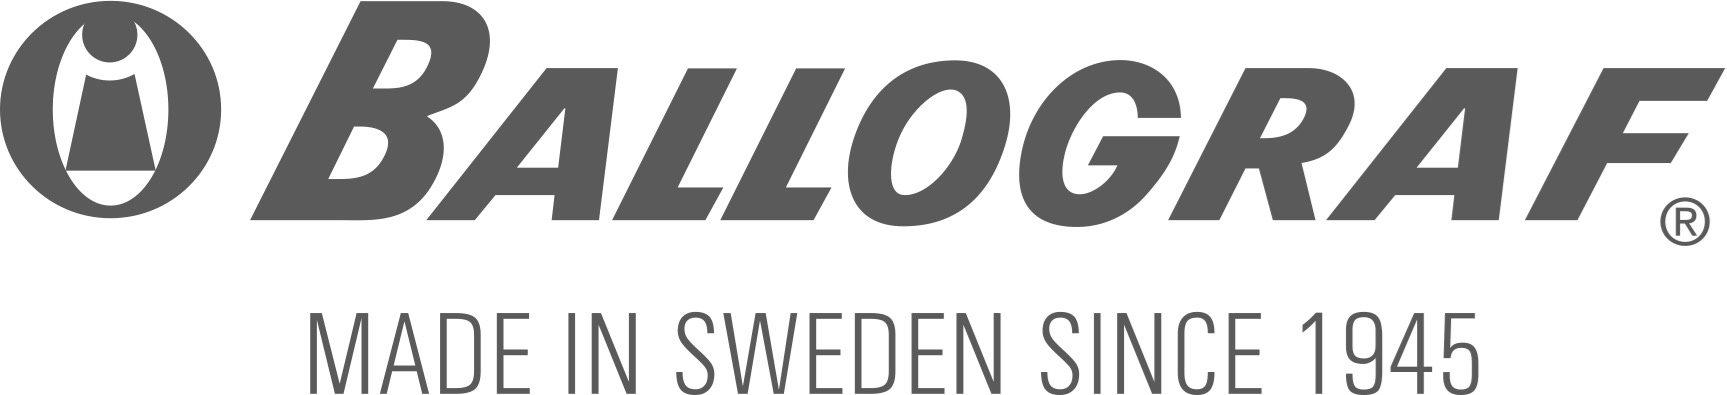 Logo of Ballograf